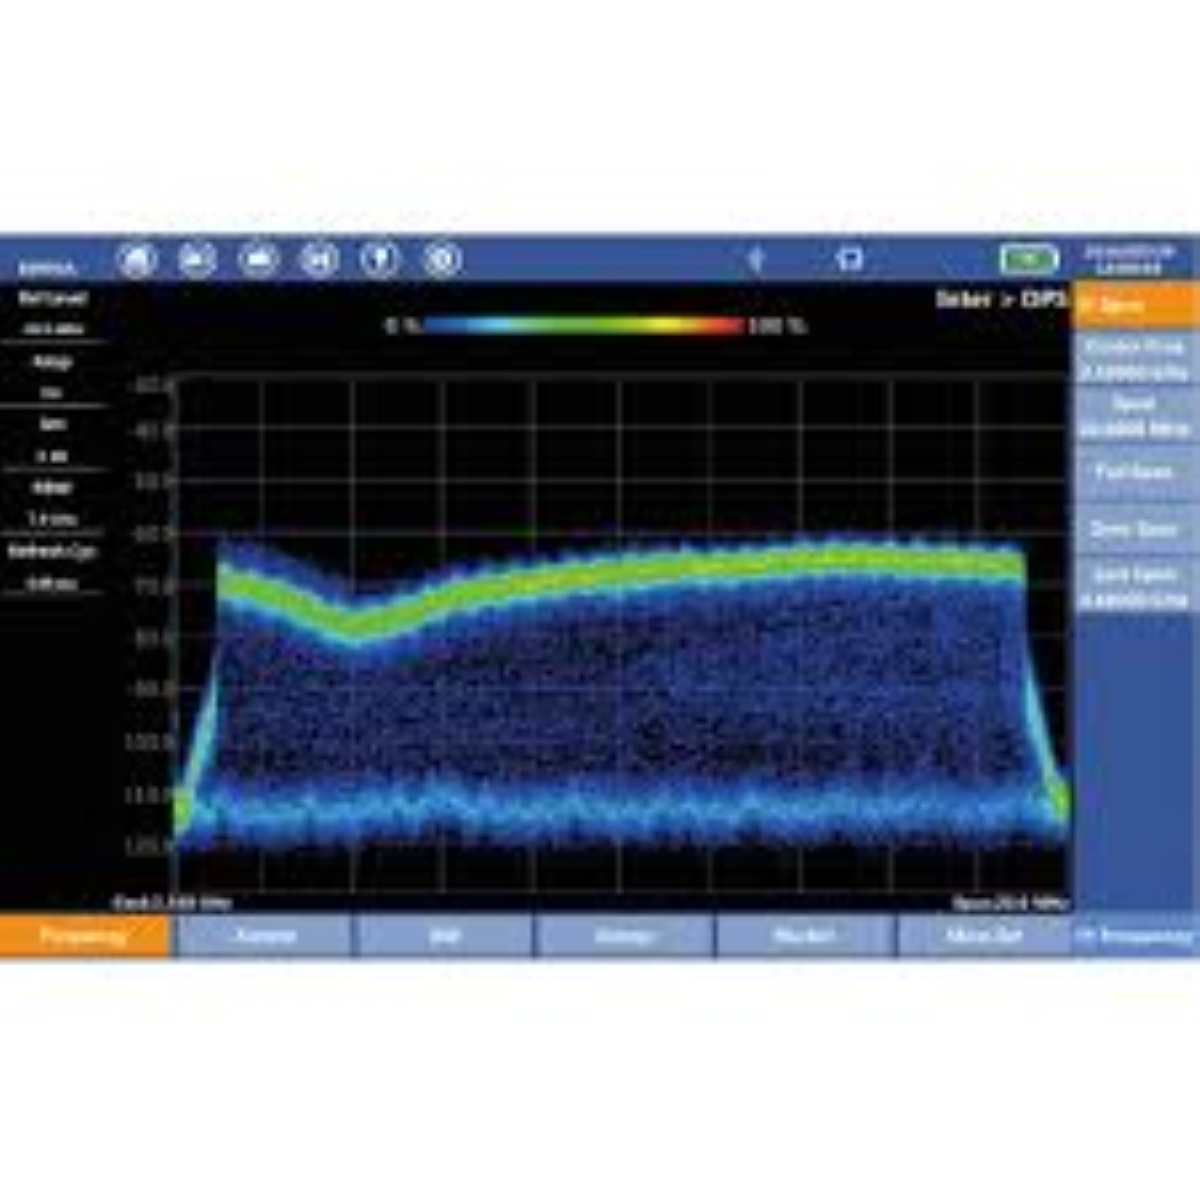 Analizador de espectro portátil 5G Deviser E8900A 9 kHz a 9 GHz